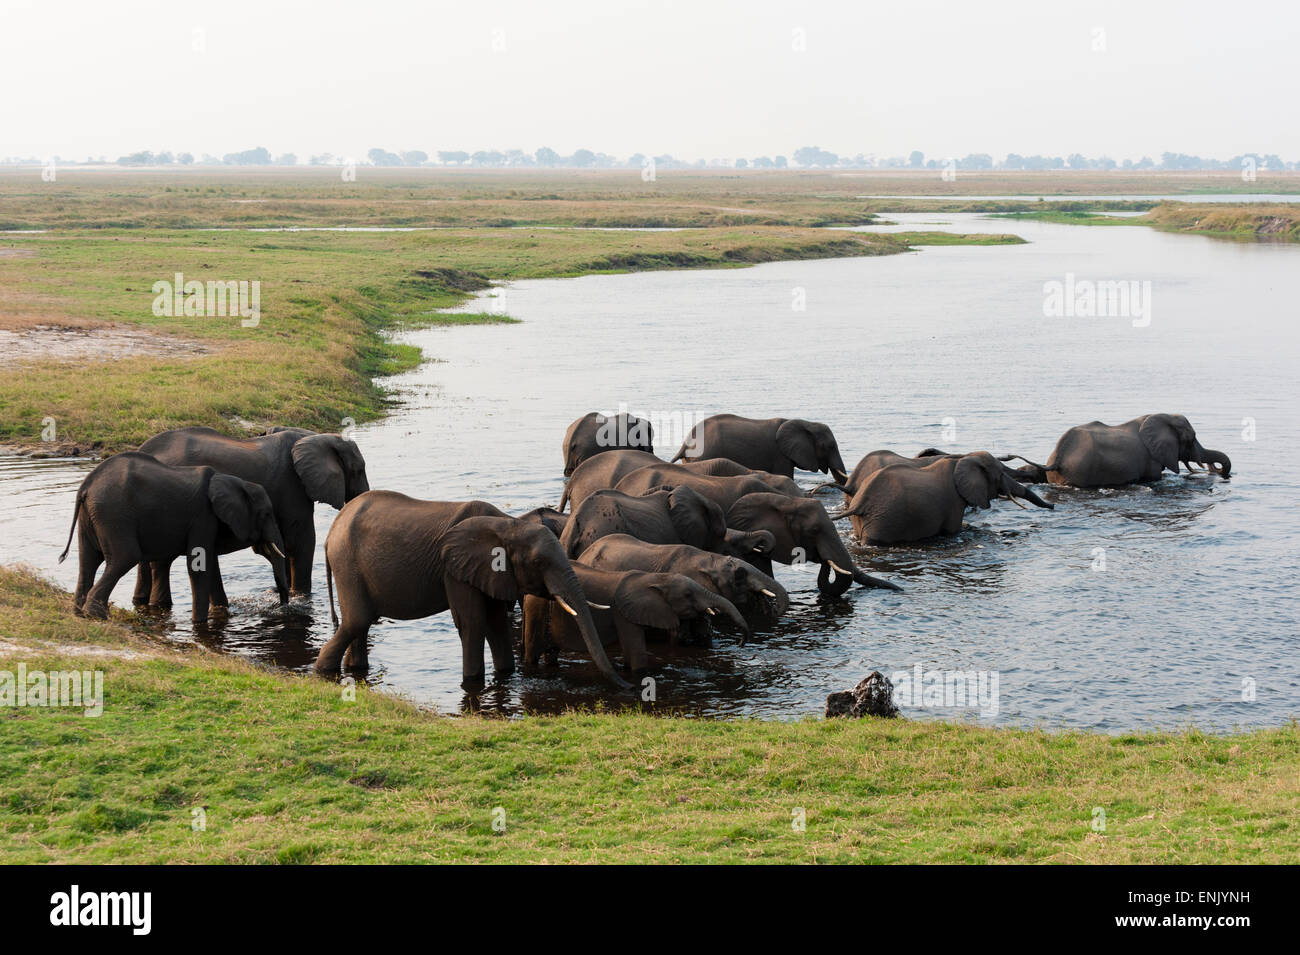 Les éléphants d'Afrique (Loxodonta africana), Chobe National Park, Botswana, Africa Banque D'Images